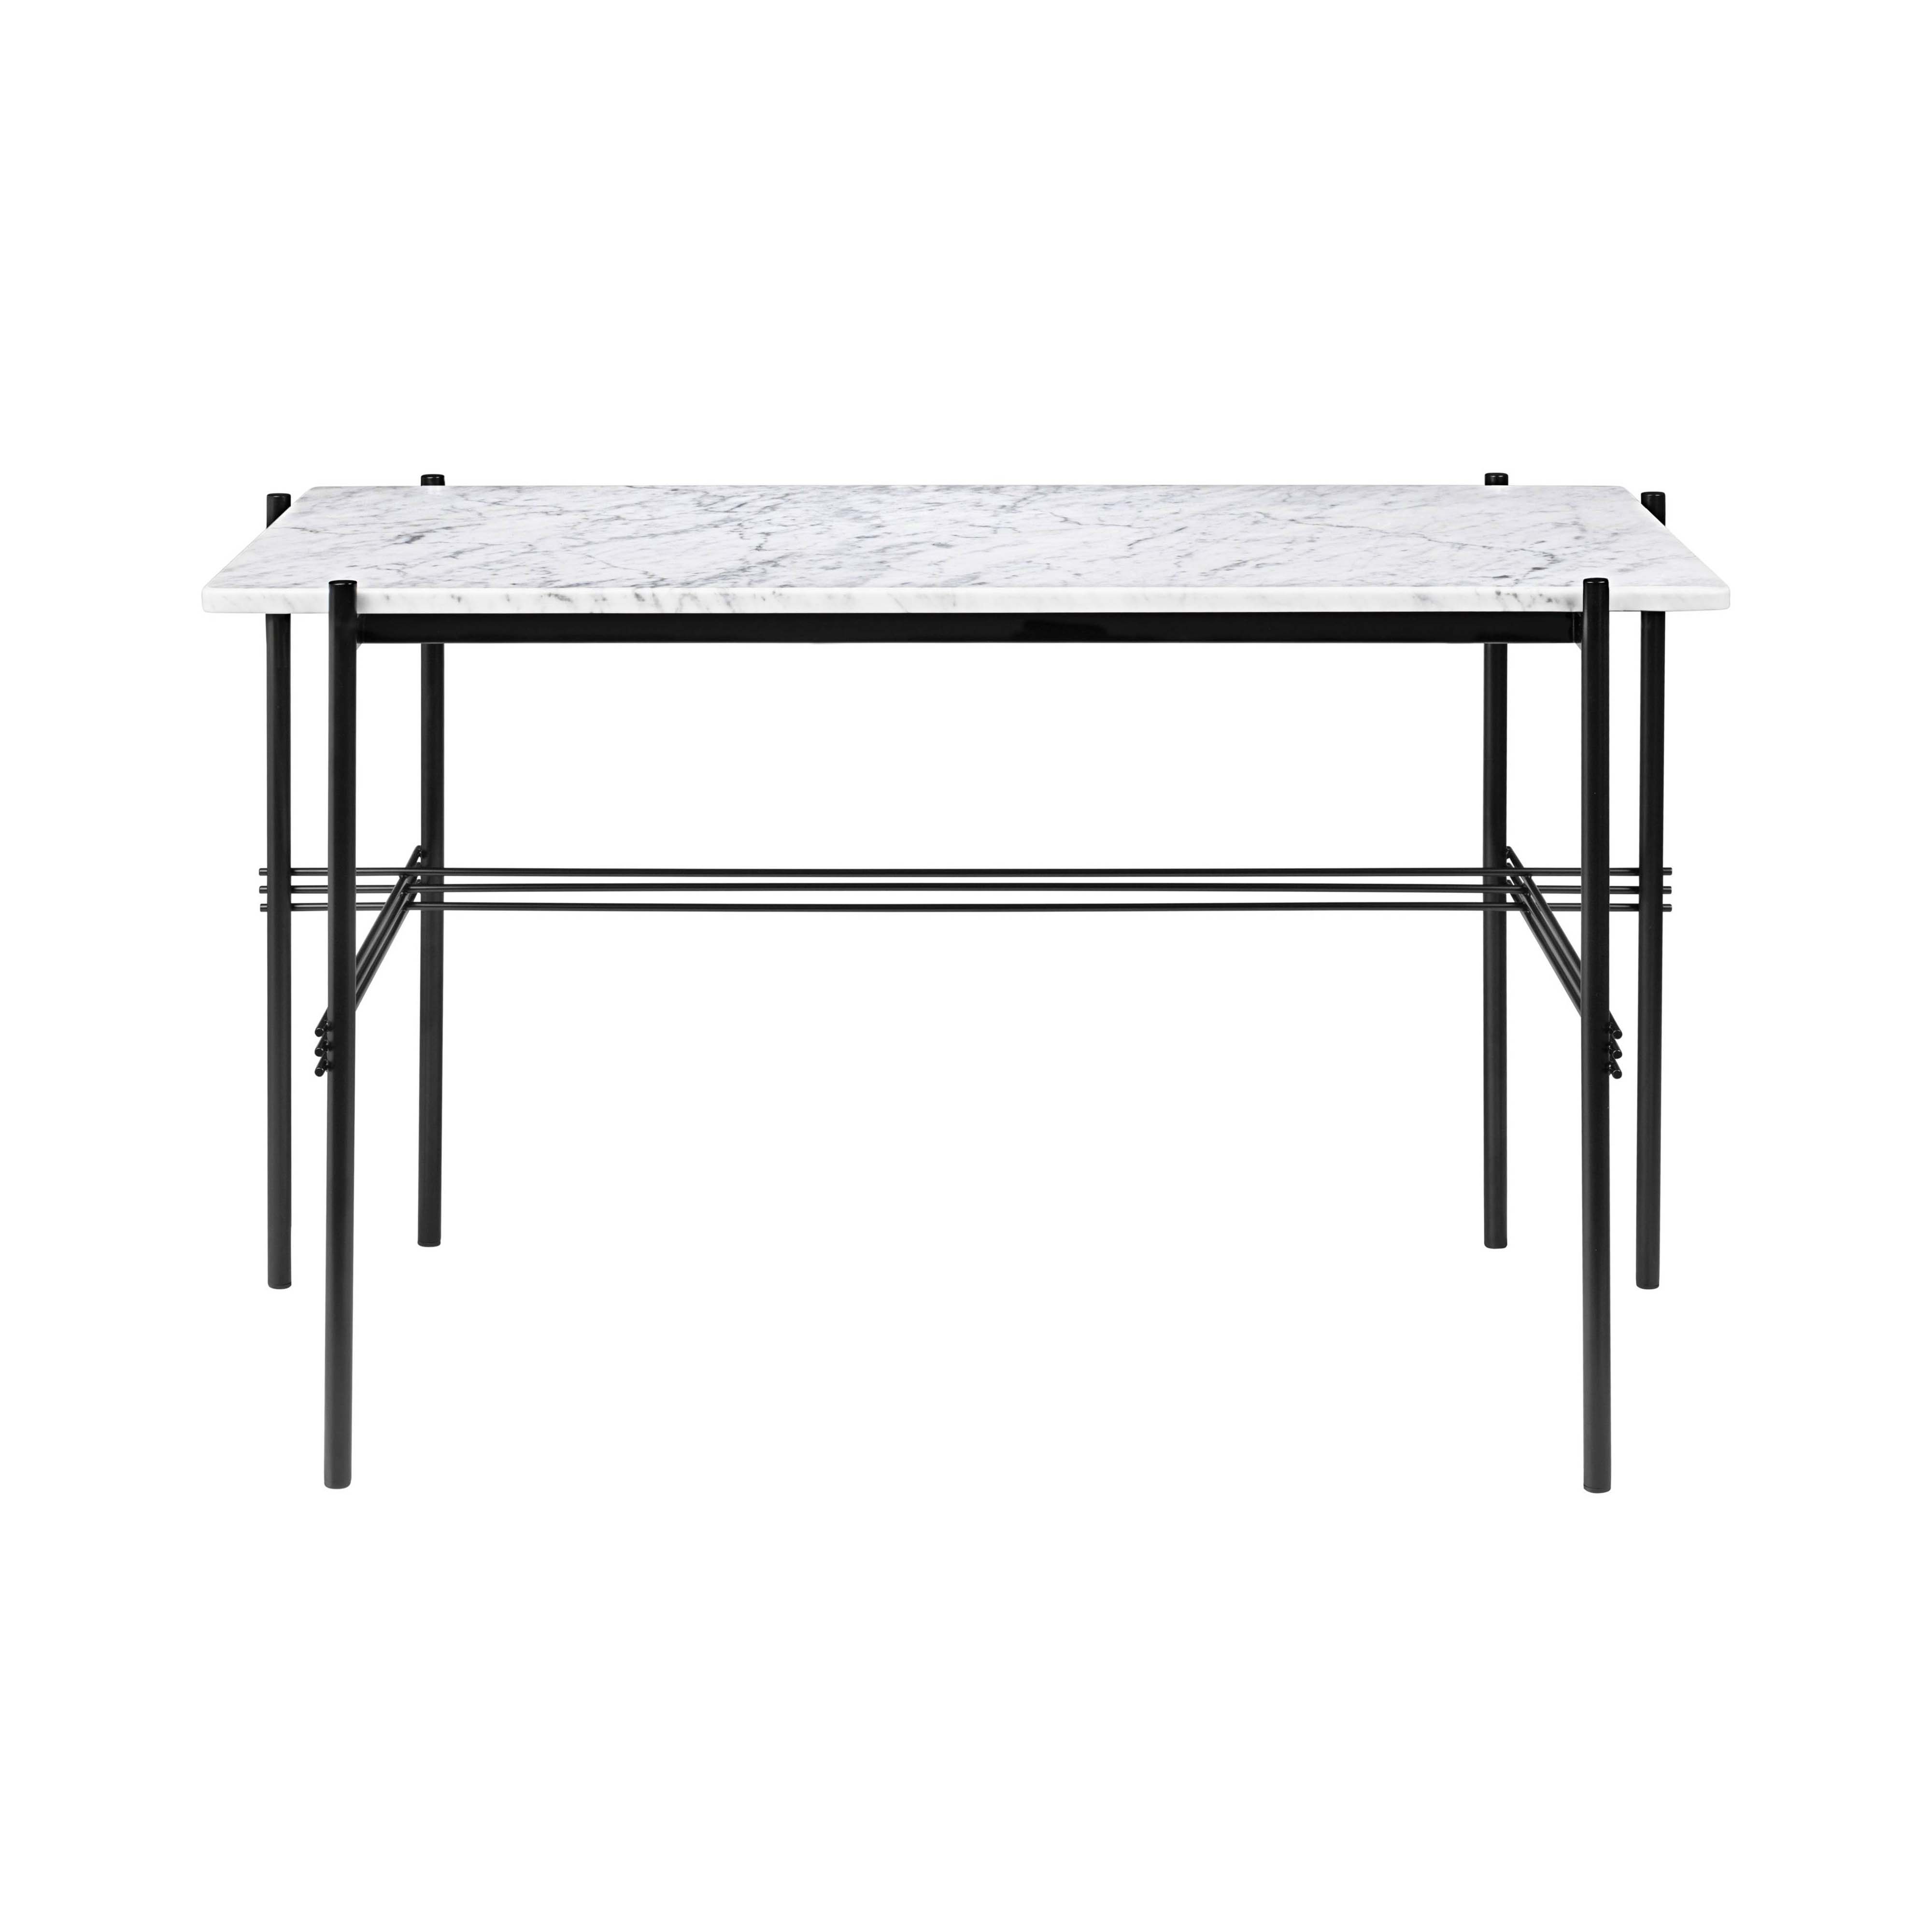 TS Desk: White Carrara